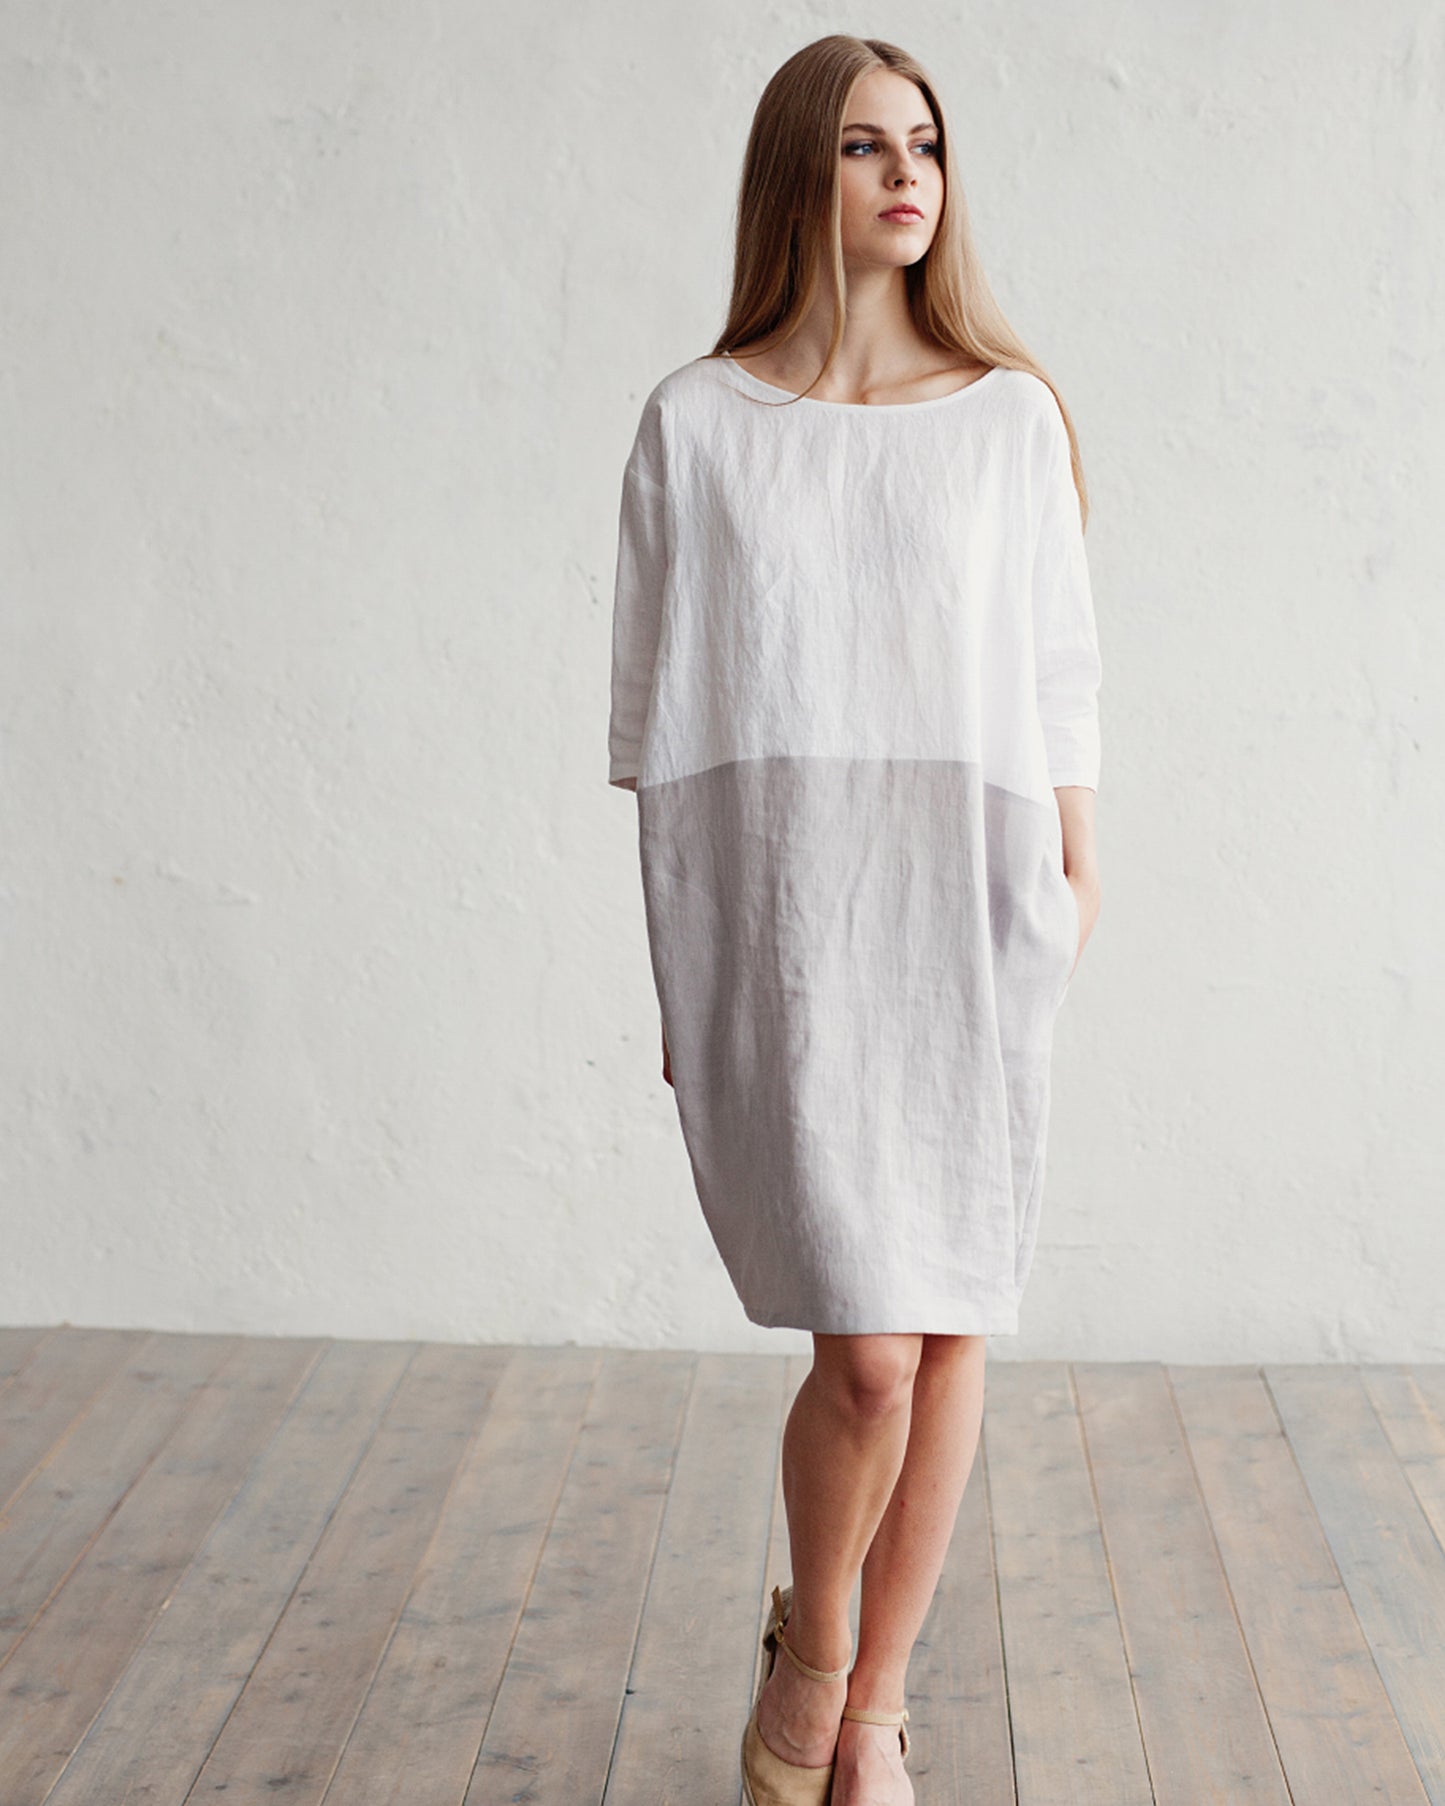 Color-block linen dress ADRIA in white-gray - MagicLinen